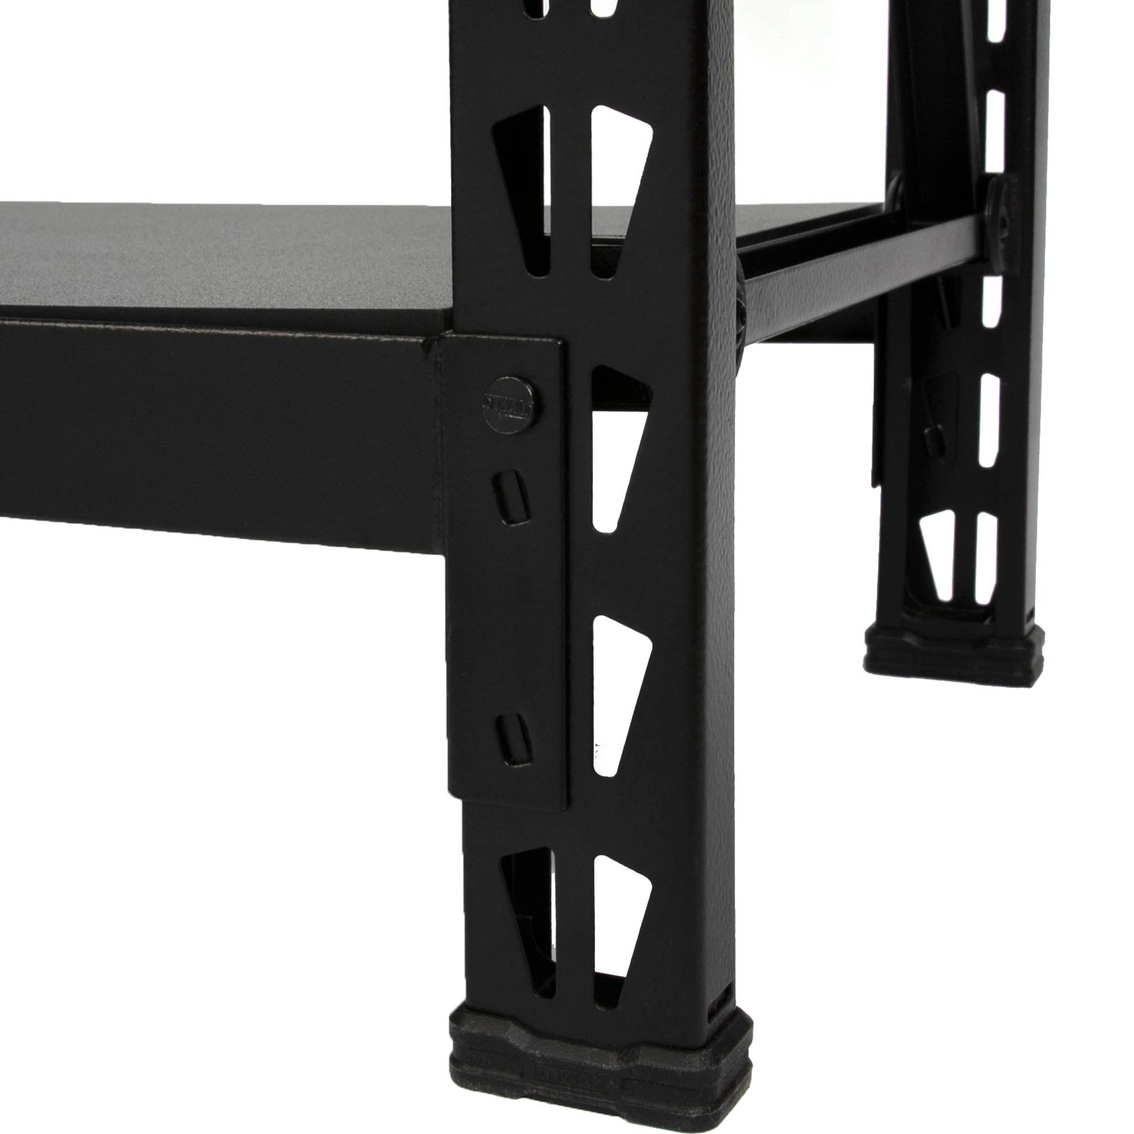 DeWalt 4 ft. Tall, Black Frame 3 Shelf Industrial Storage Rack - Image 4 of 7